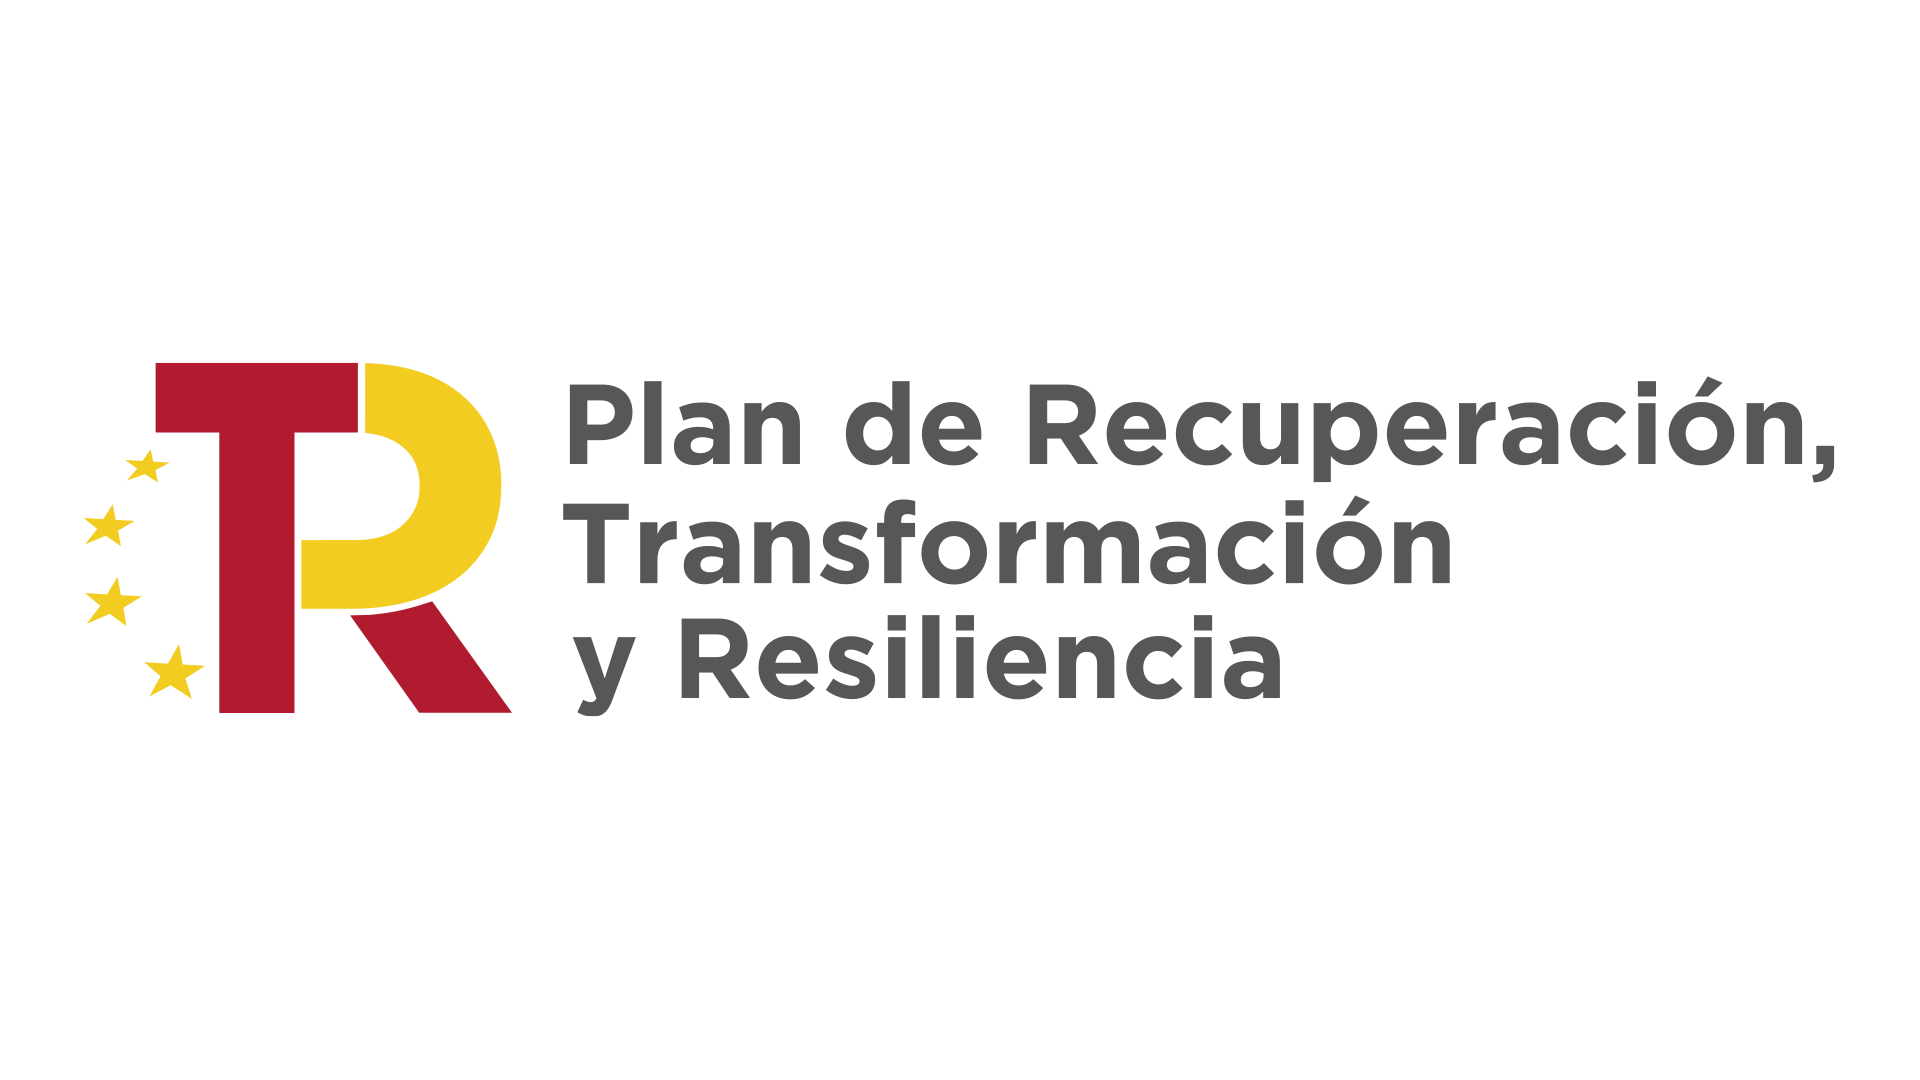 Logotip del Plan de Recuperación, Transformación y Resiliencia.